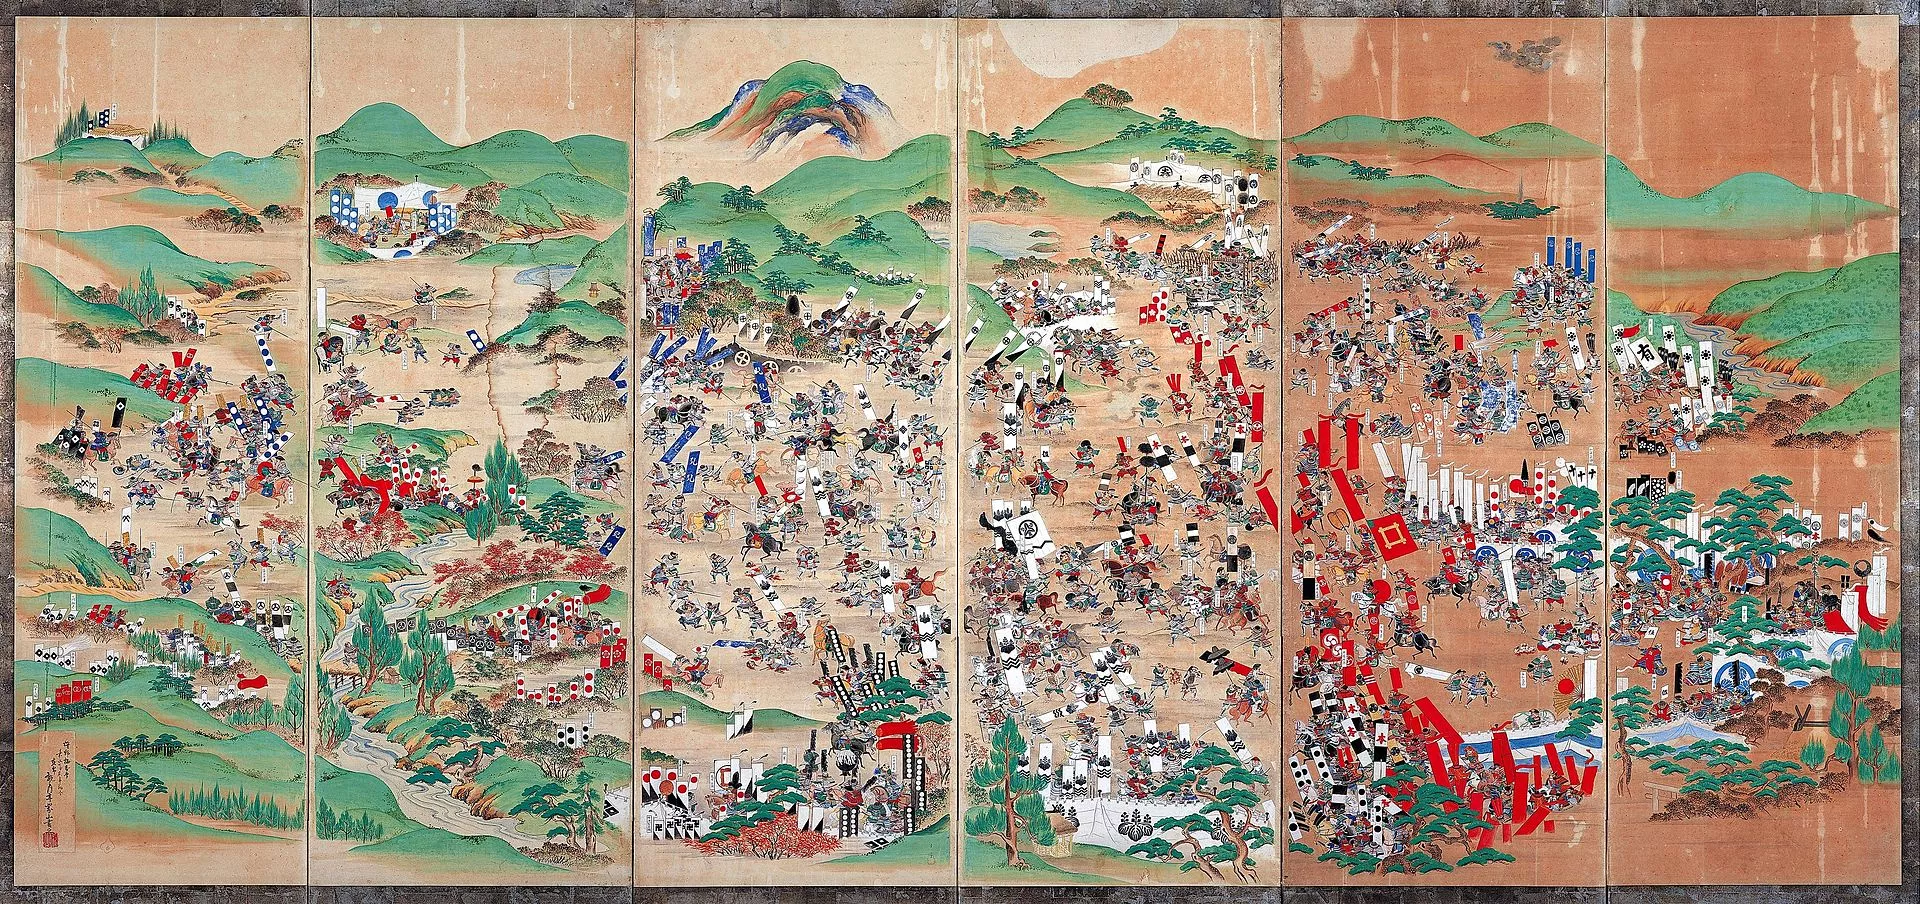 Pintura del període Edo sobre la batalla de Sekigahara